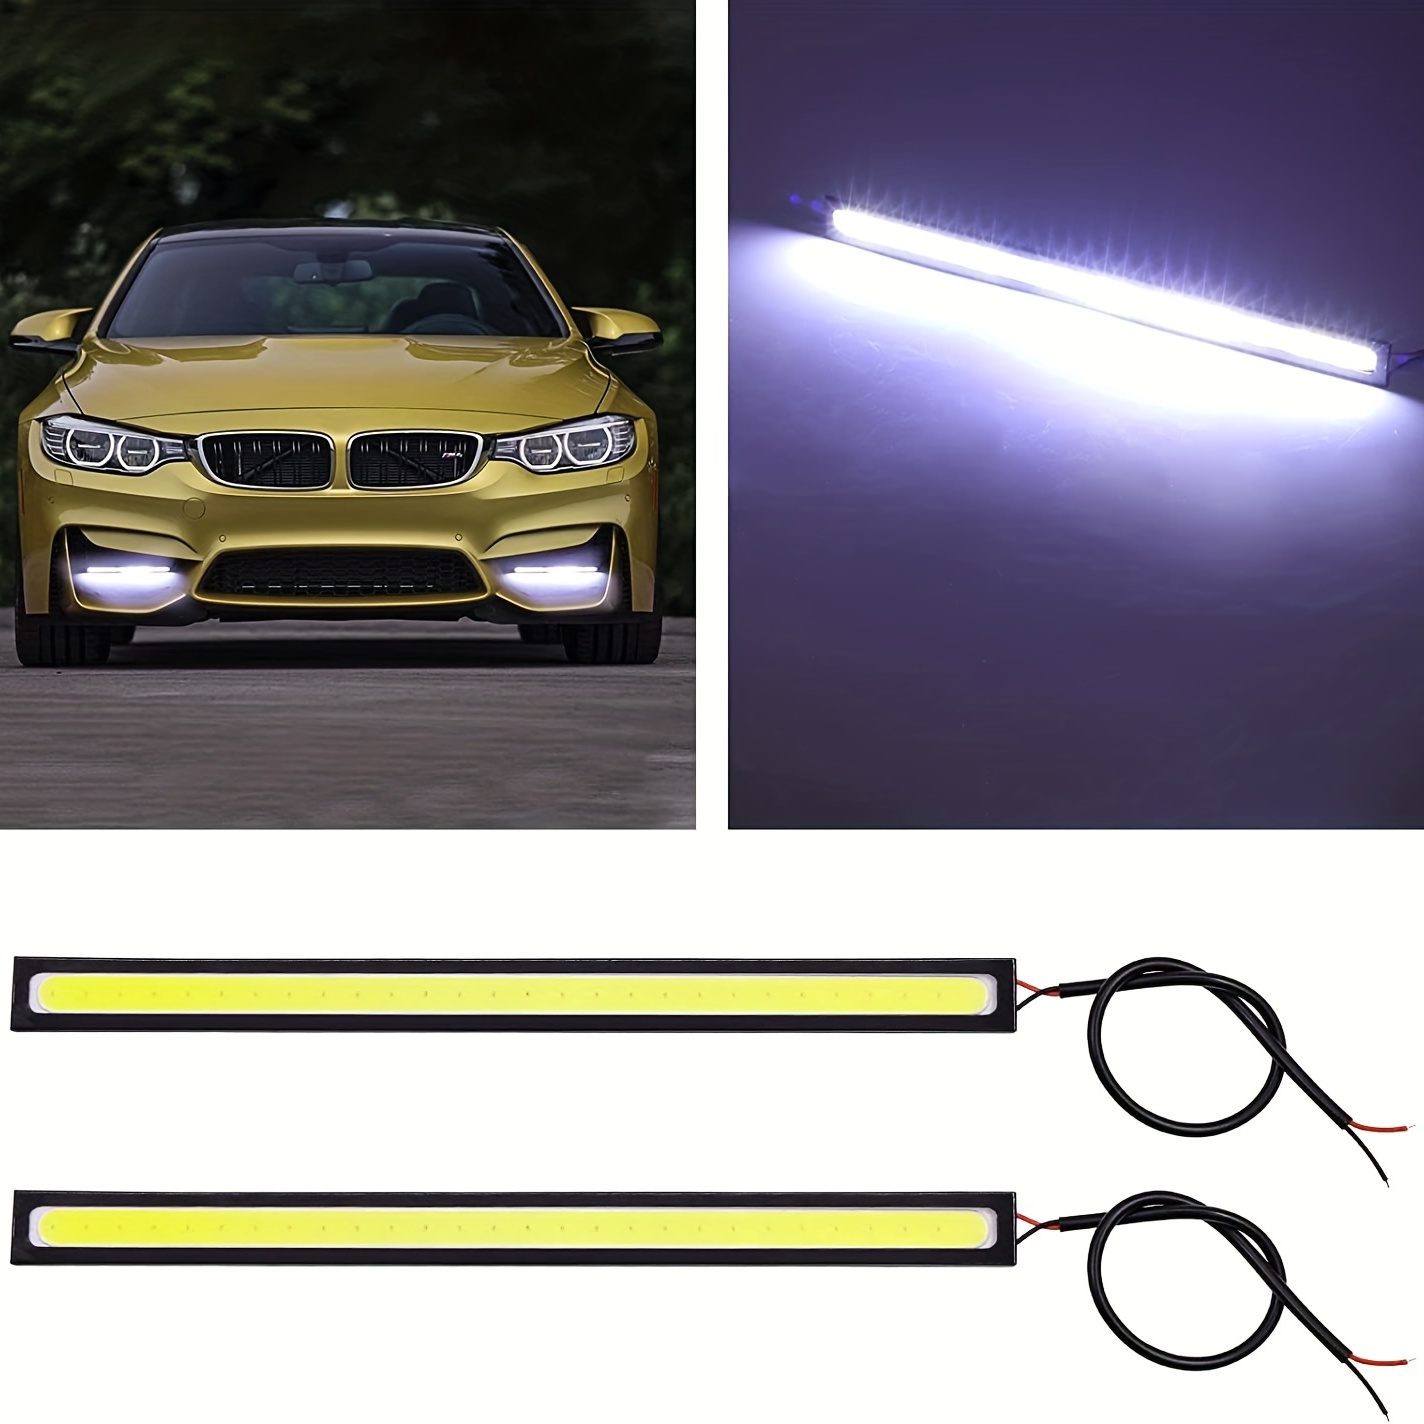  LEDCARE Tira de luces LED flexibles para coche, 48 pulgadas,  color de ensueño para el exterior del coche, kit de luces LED, impermeable,  luces traseras de freno de marcha atrás, luz